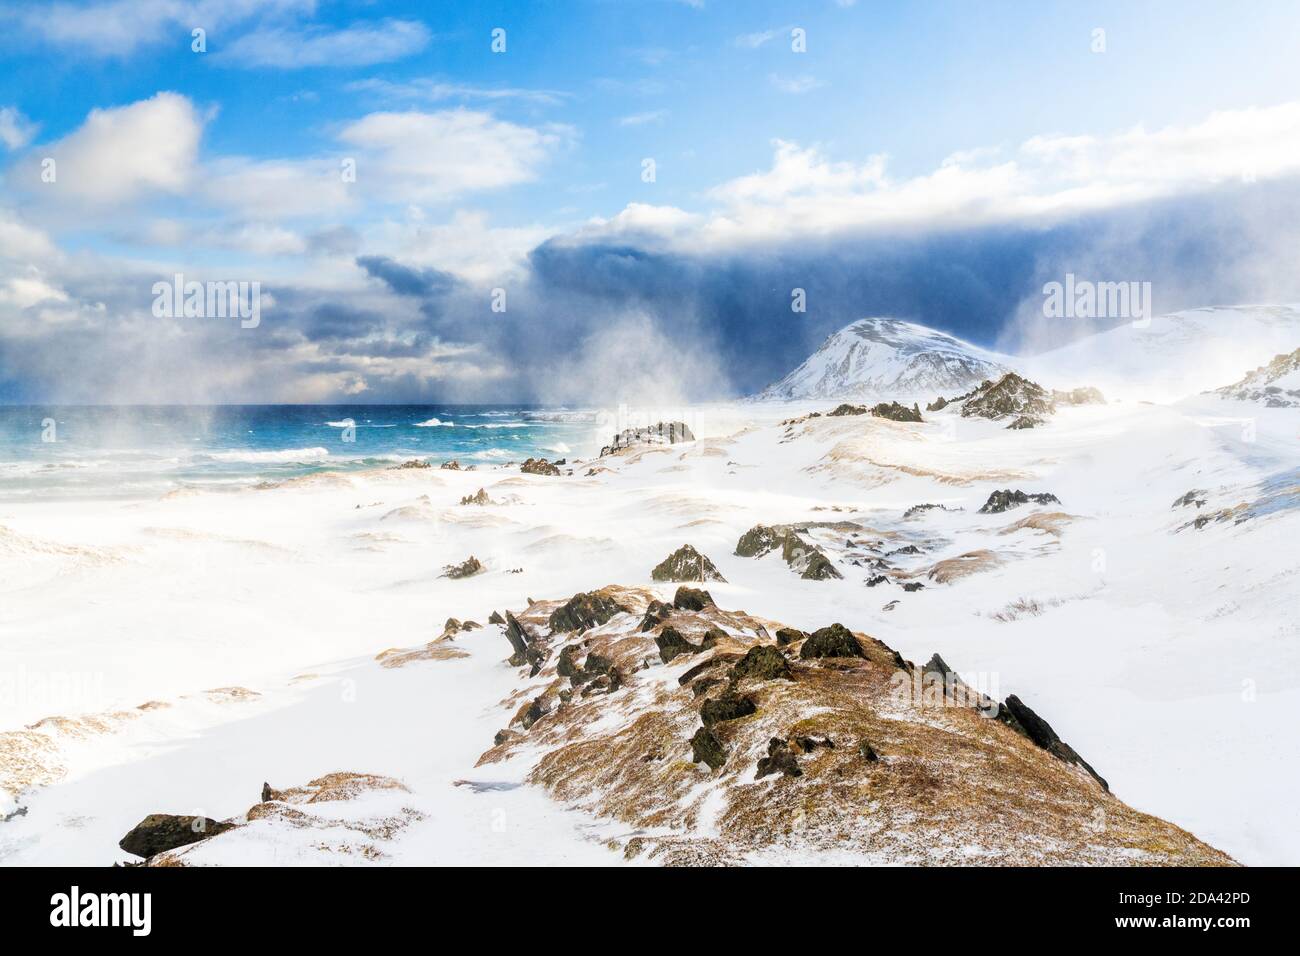 Onde di mare artico che si infrangono su un paesaggio innevato durante una bizzarda, Sandfjorden, Berlevag, Penisola di Varanger, Finnmark, Norvegia Foto Stock